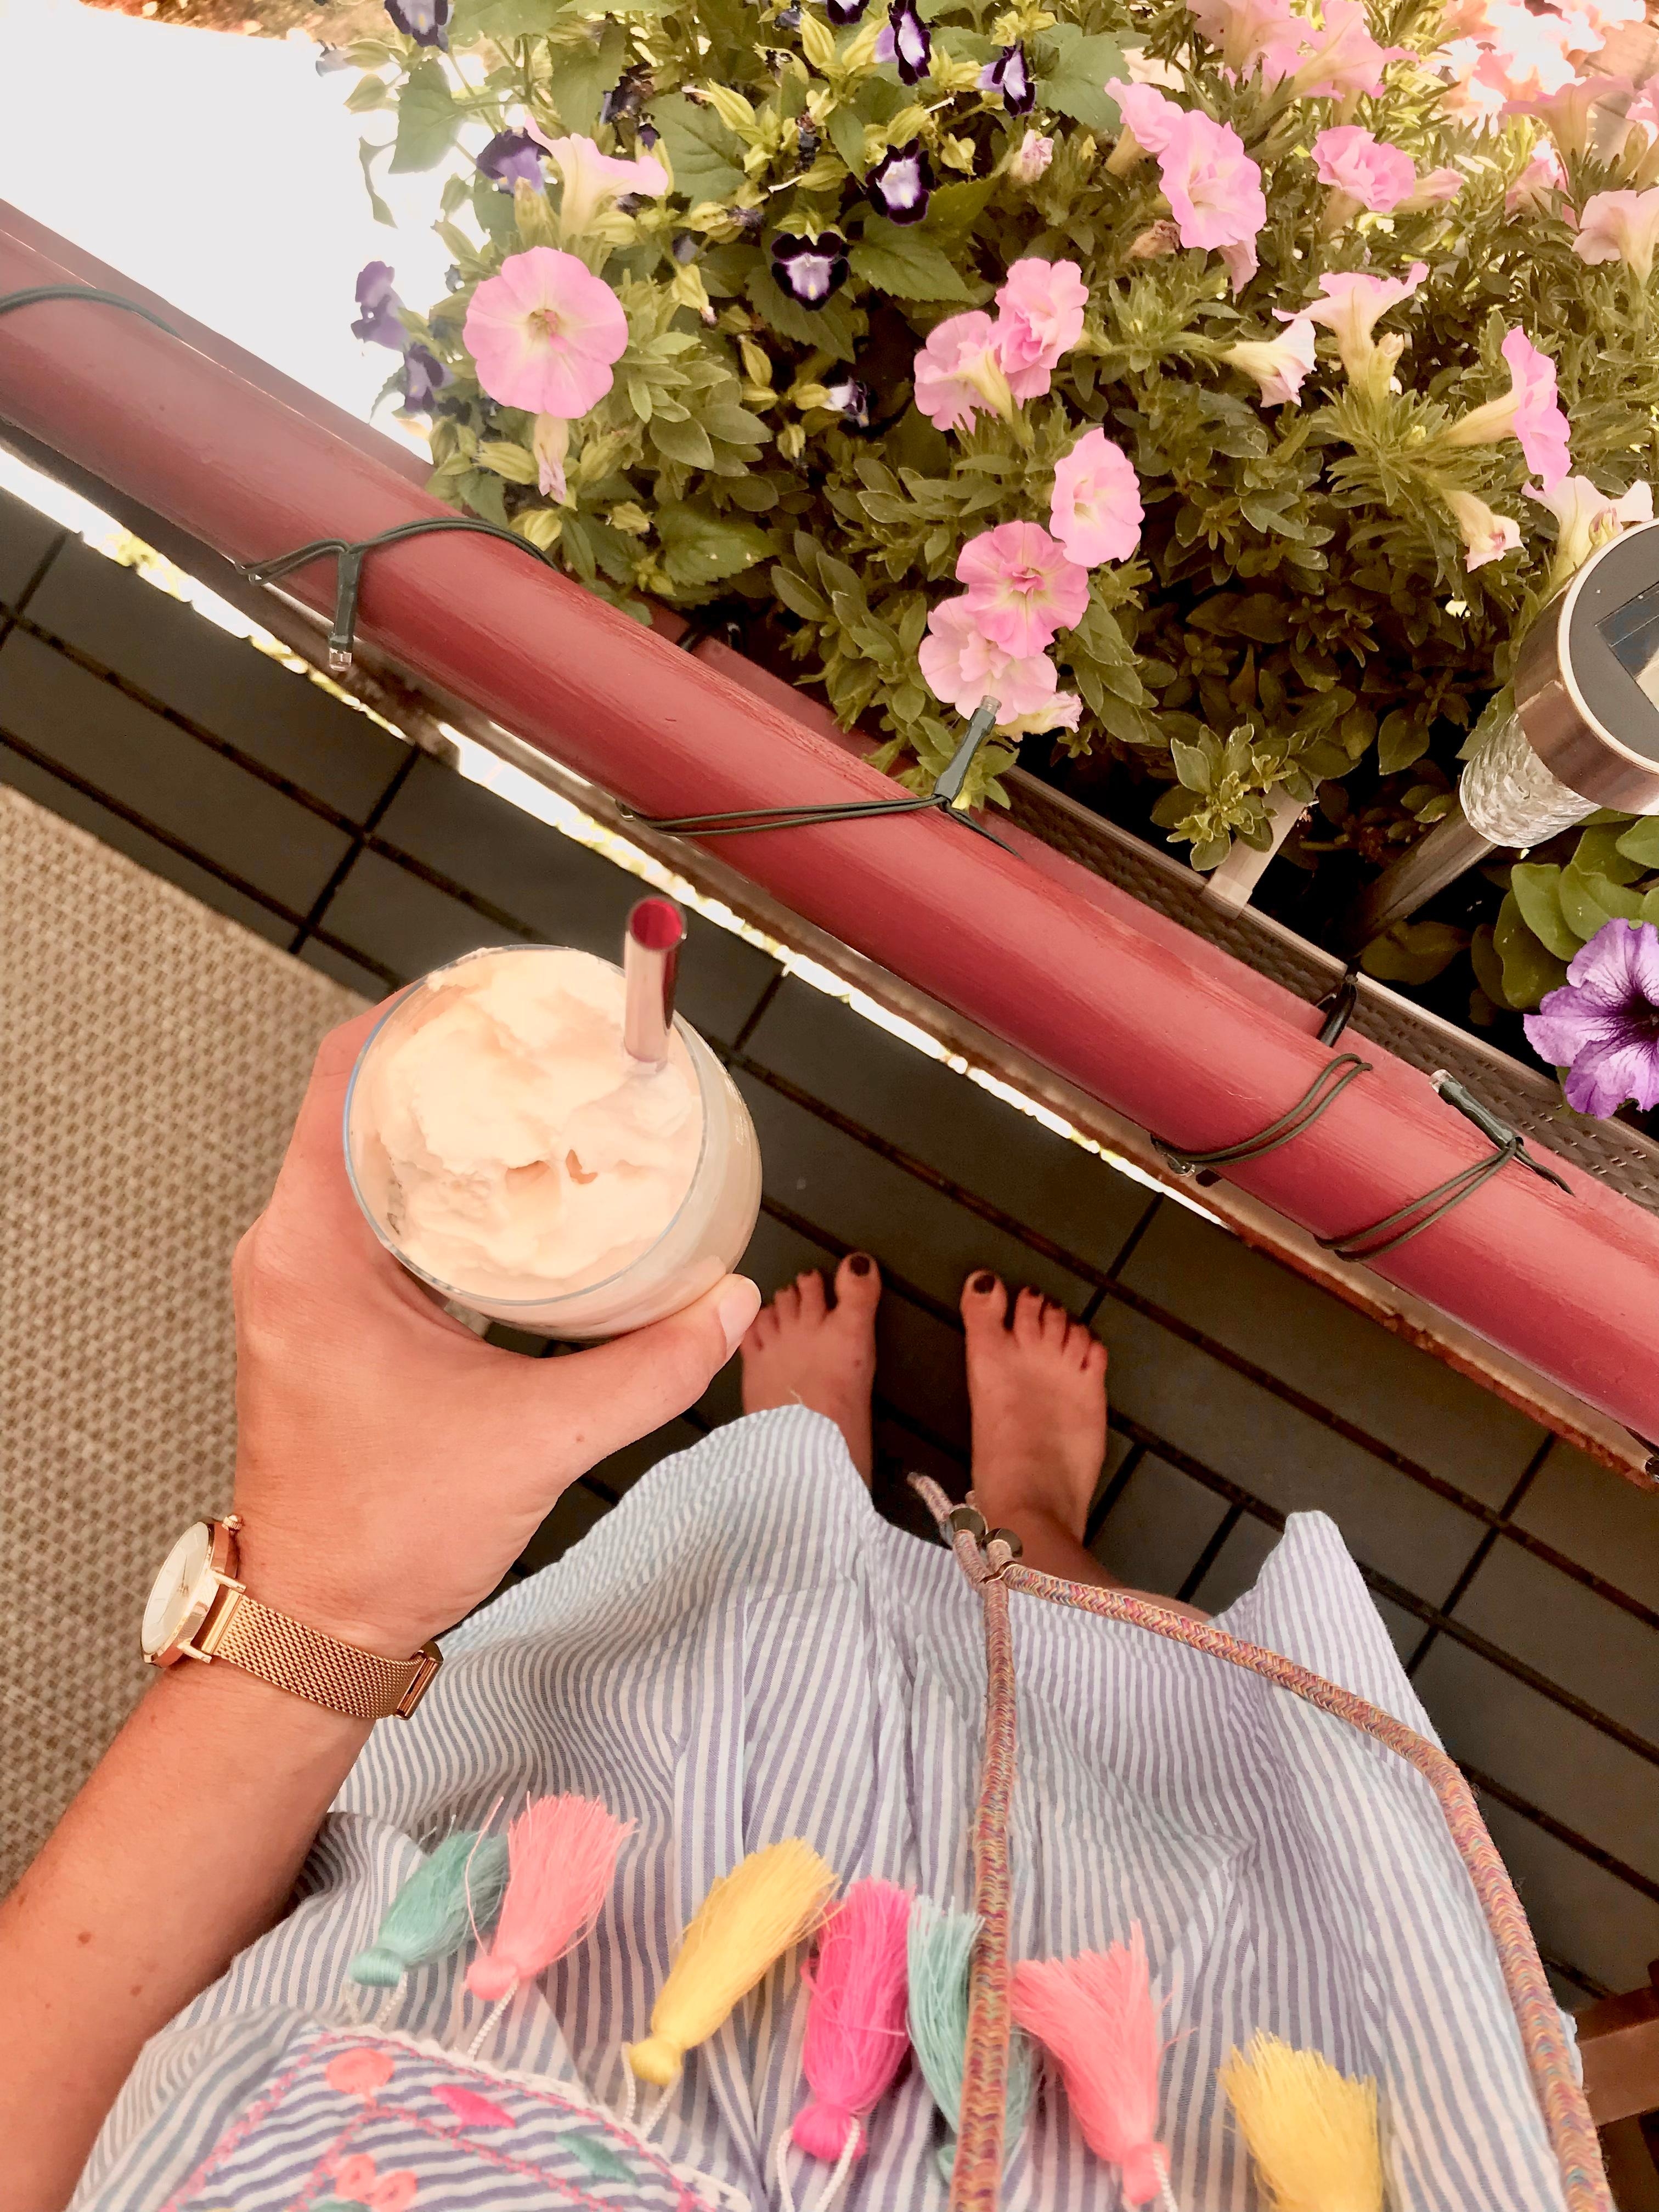 32 Grad da hilft nur ein Eiscafé 🧋
#outdoor #balkon 
#sommer #blumen 